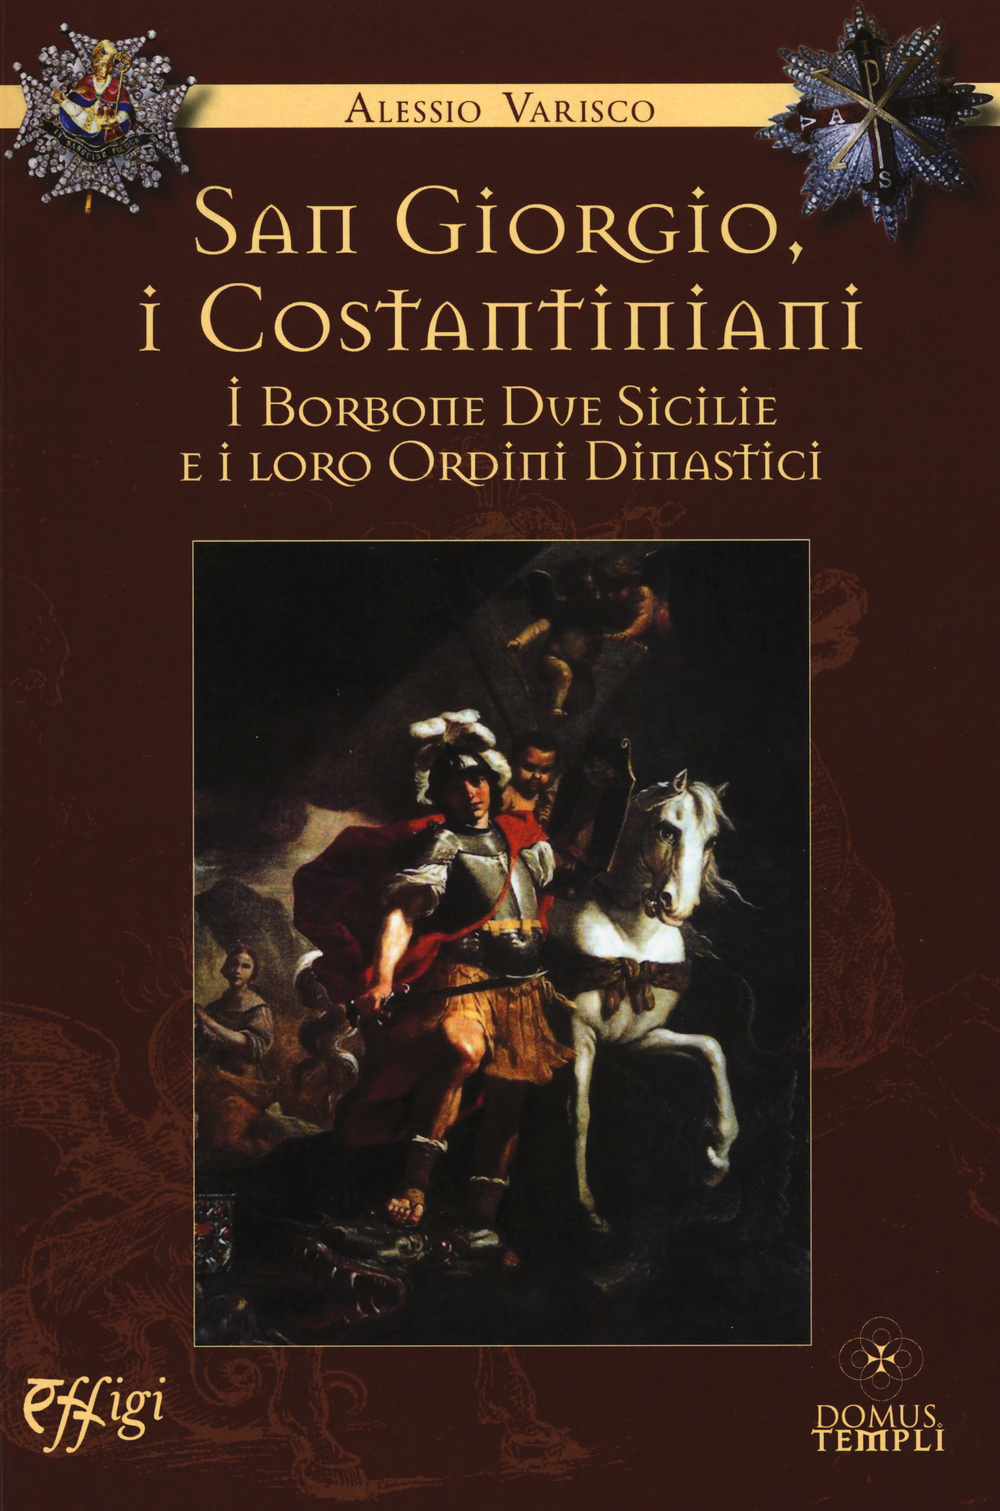 San Giorgio, i costantiniani, i Borboni Due Sicilie e i loro ordini dinastici